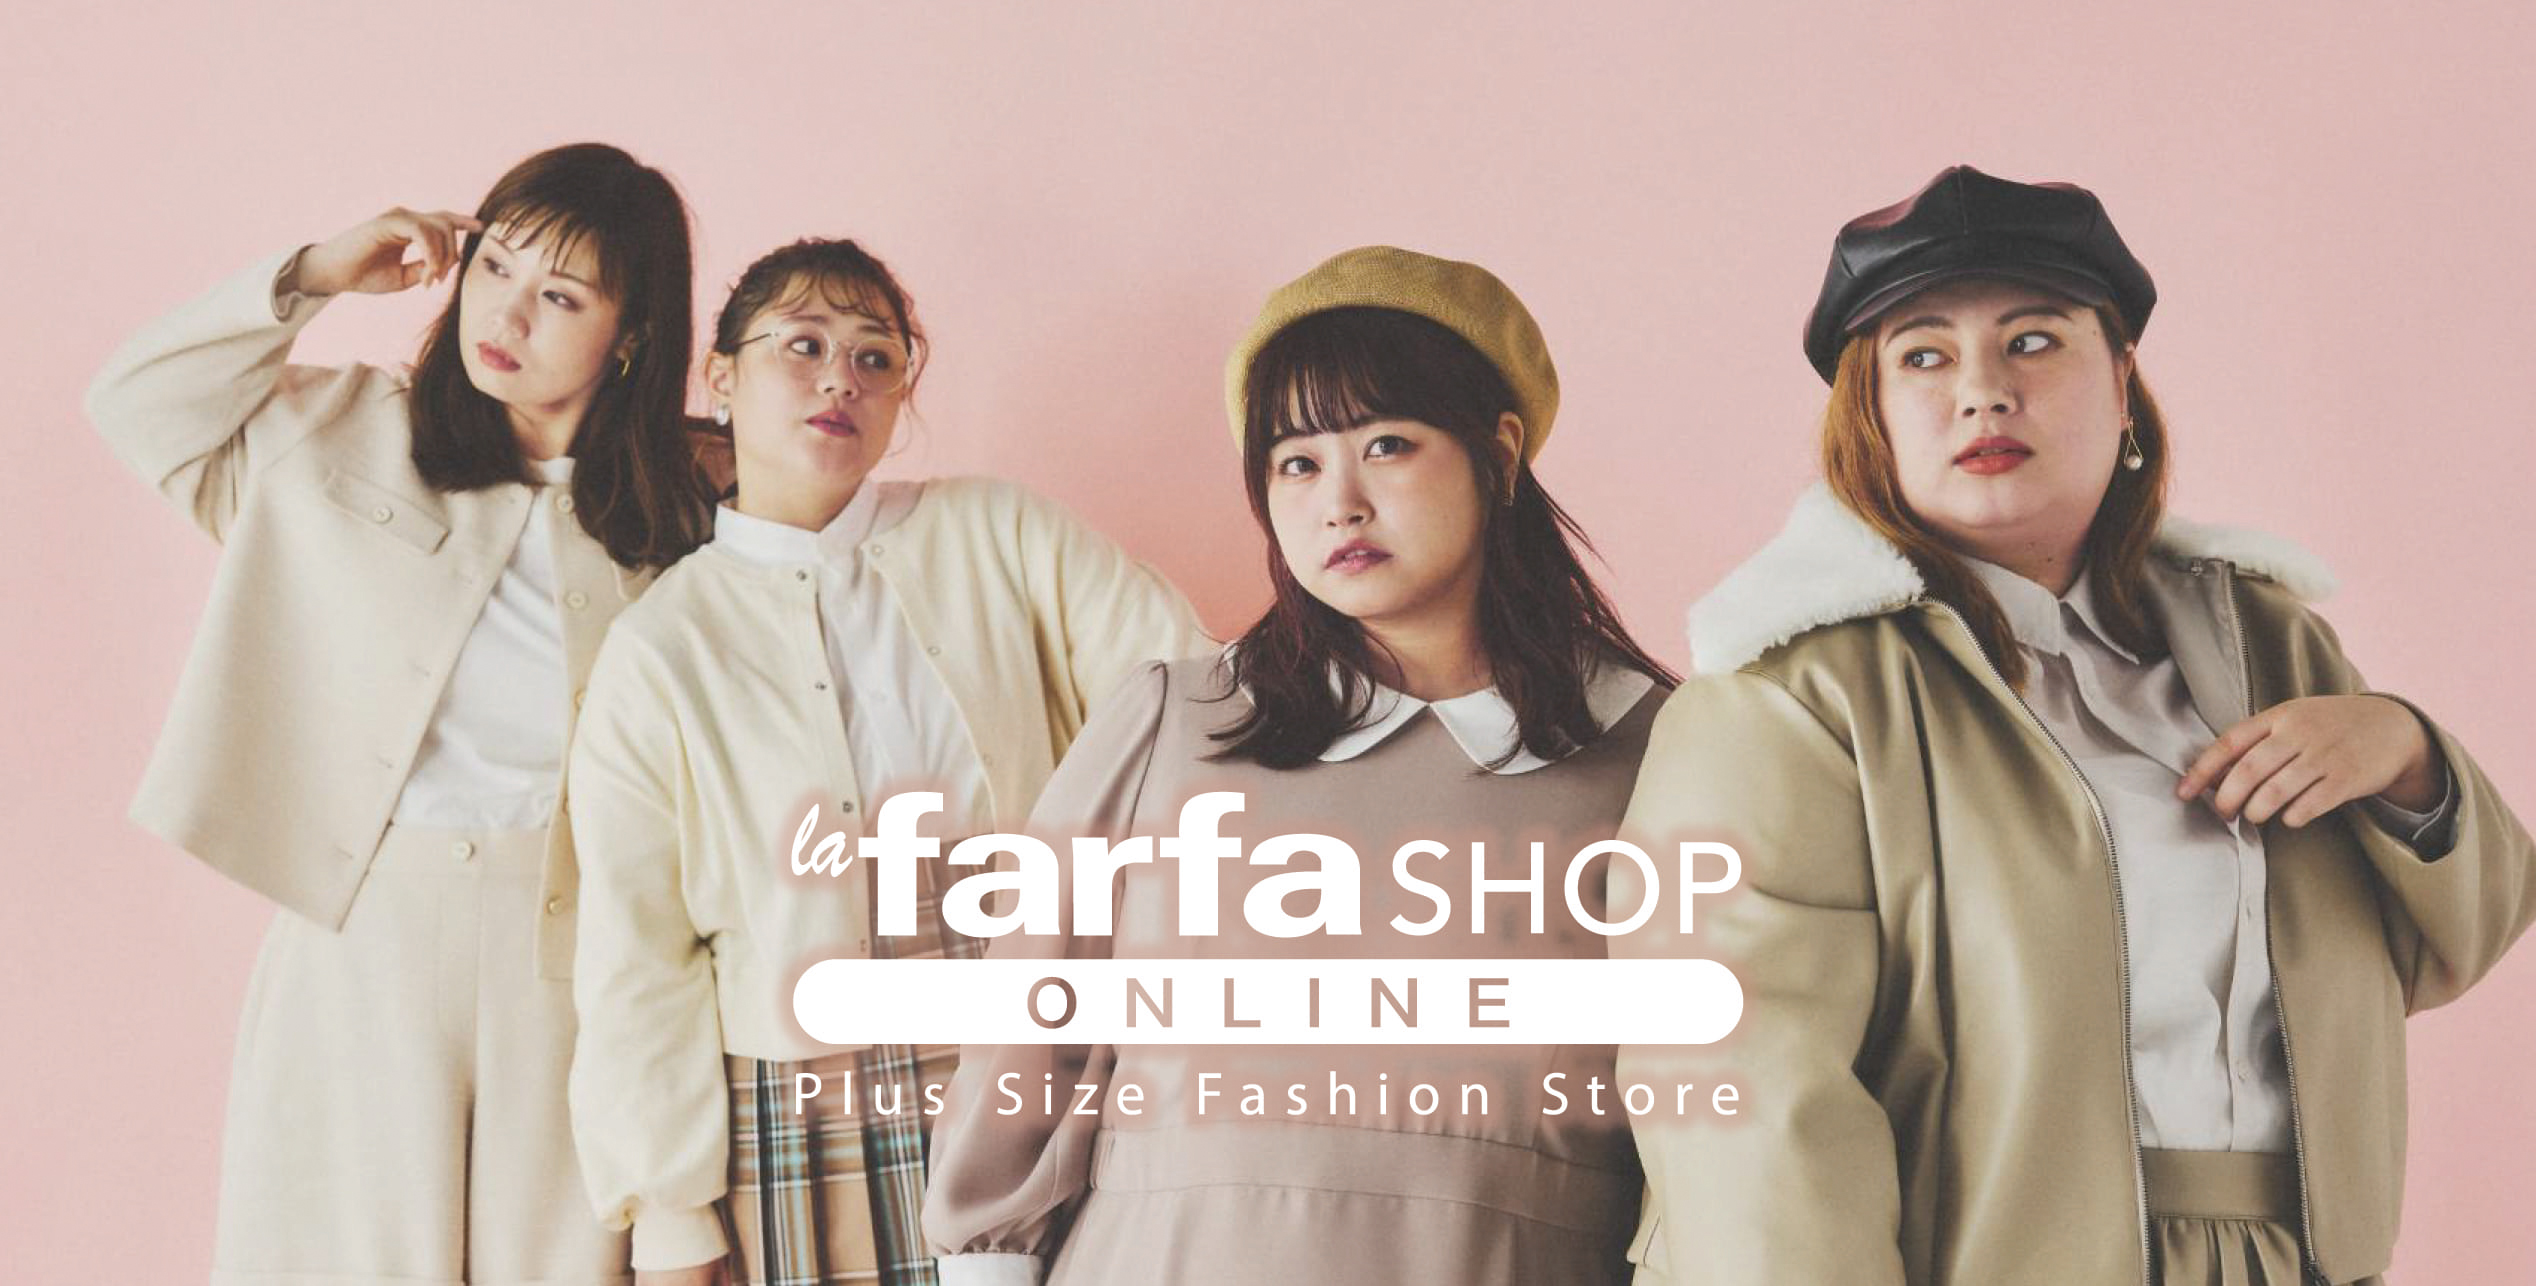 ぽっちゃり女性の 欲しい を集めたファッションモール La Farfa Shop Online が7月7日 木 よりオープン Newscast